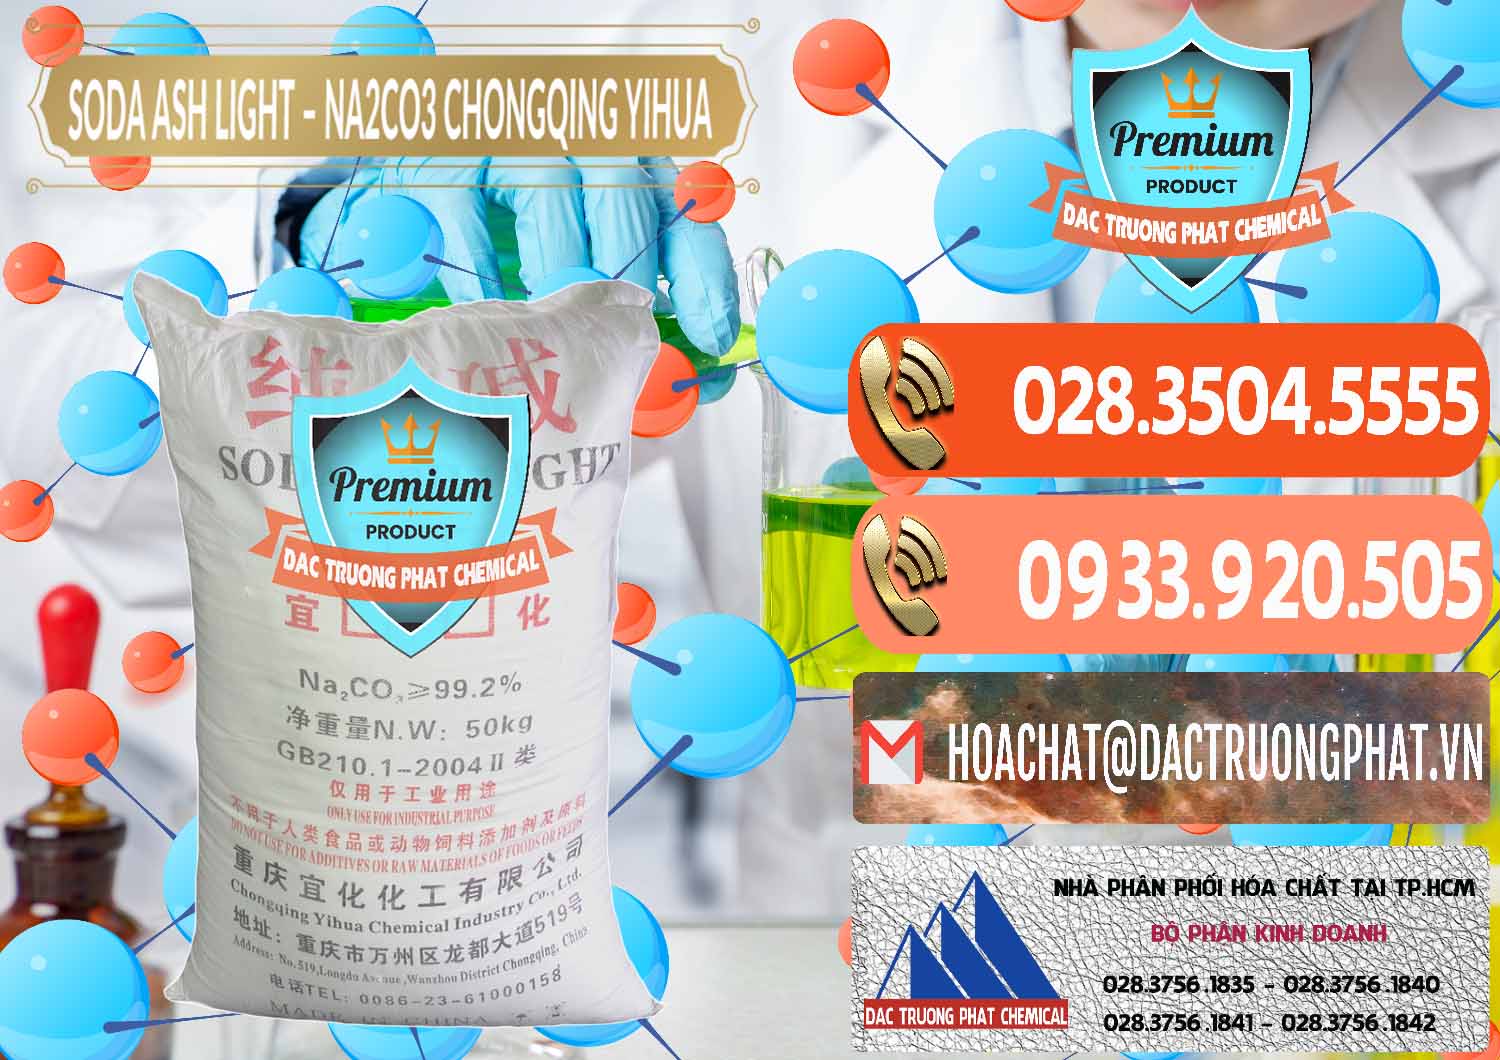 Cung cấp & bán Soda Ash Light - NA2CO3 Chongqing Yihua Trung Quốc China - 0129 - Nơi cung cấp & bán hóa chất tại TP.HCM - hoachatmientay.com